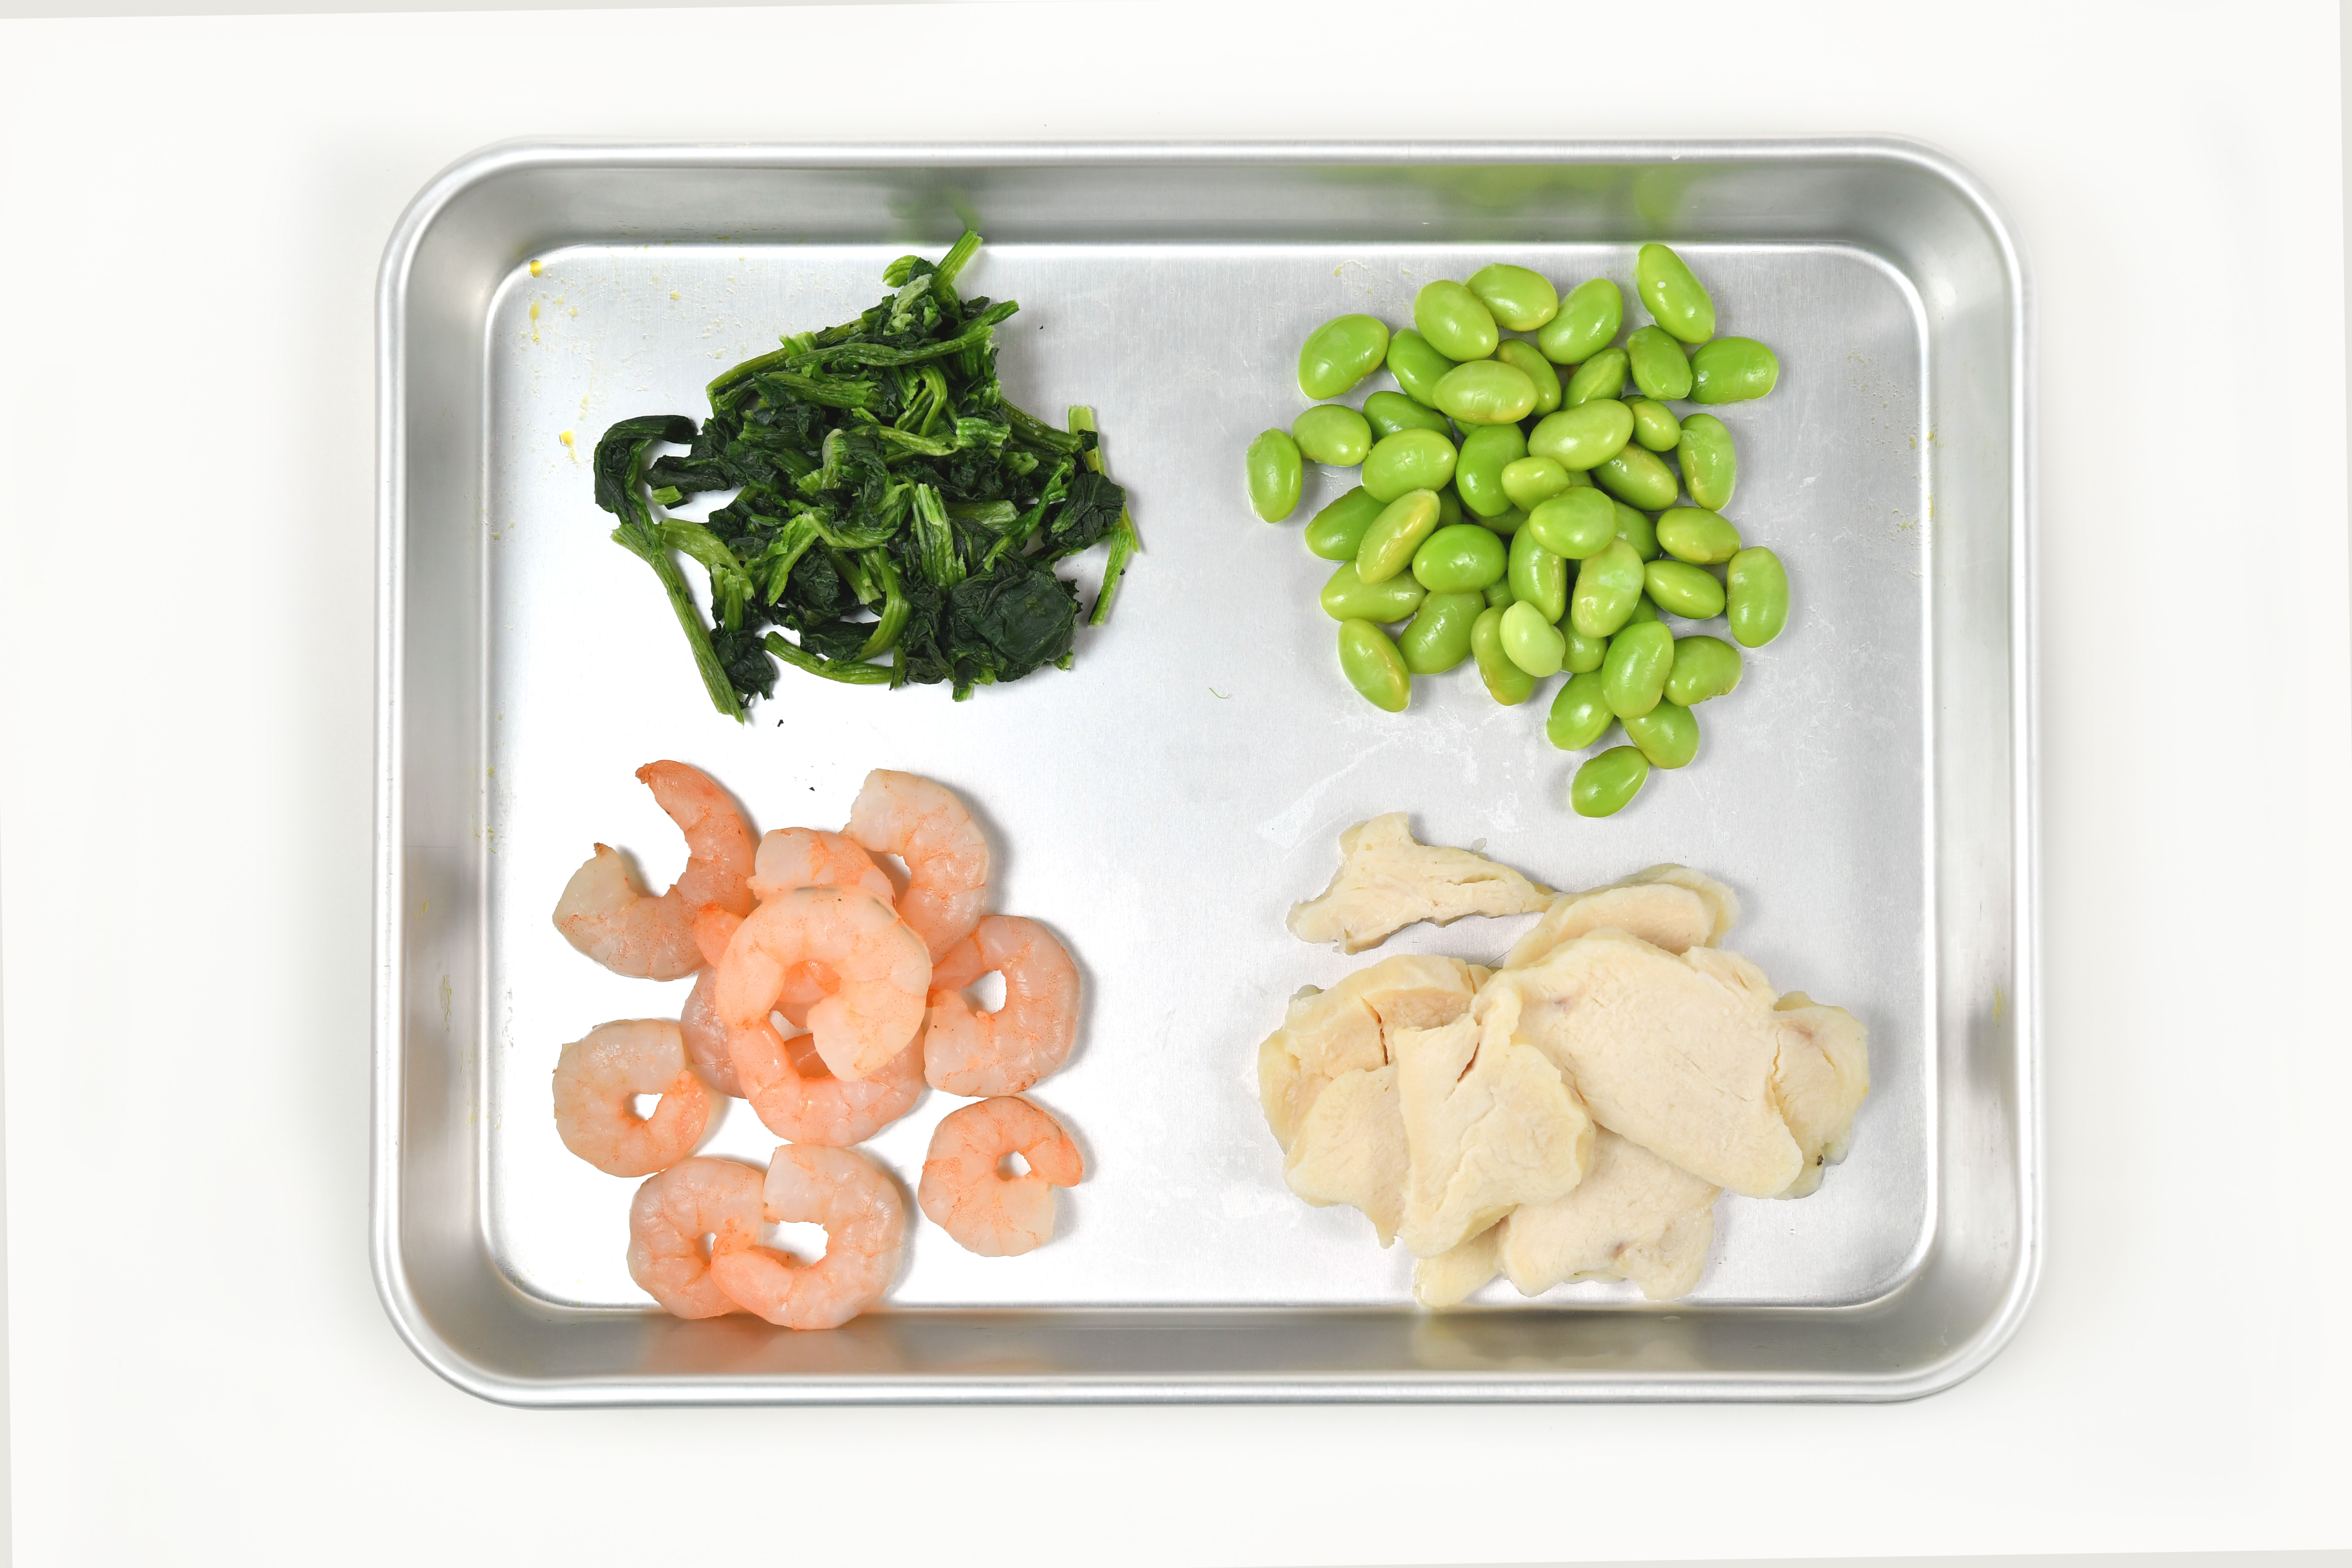 冷凍枝豆、冷凍サラダチキン、冷凍むきエビ、冷凍ほうれん草の4種の冷凍食品を使用。